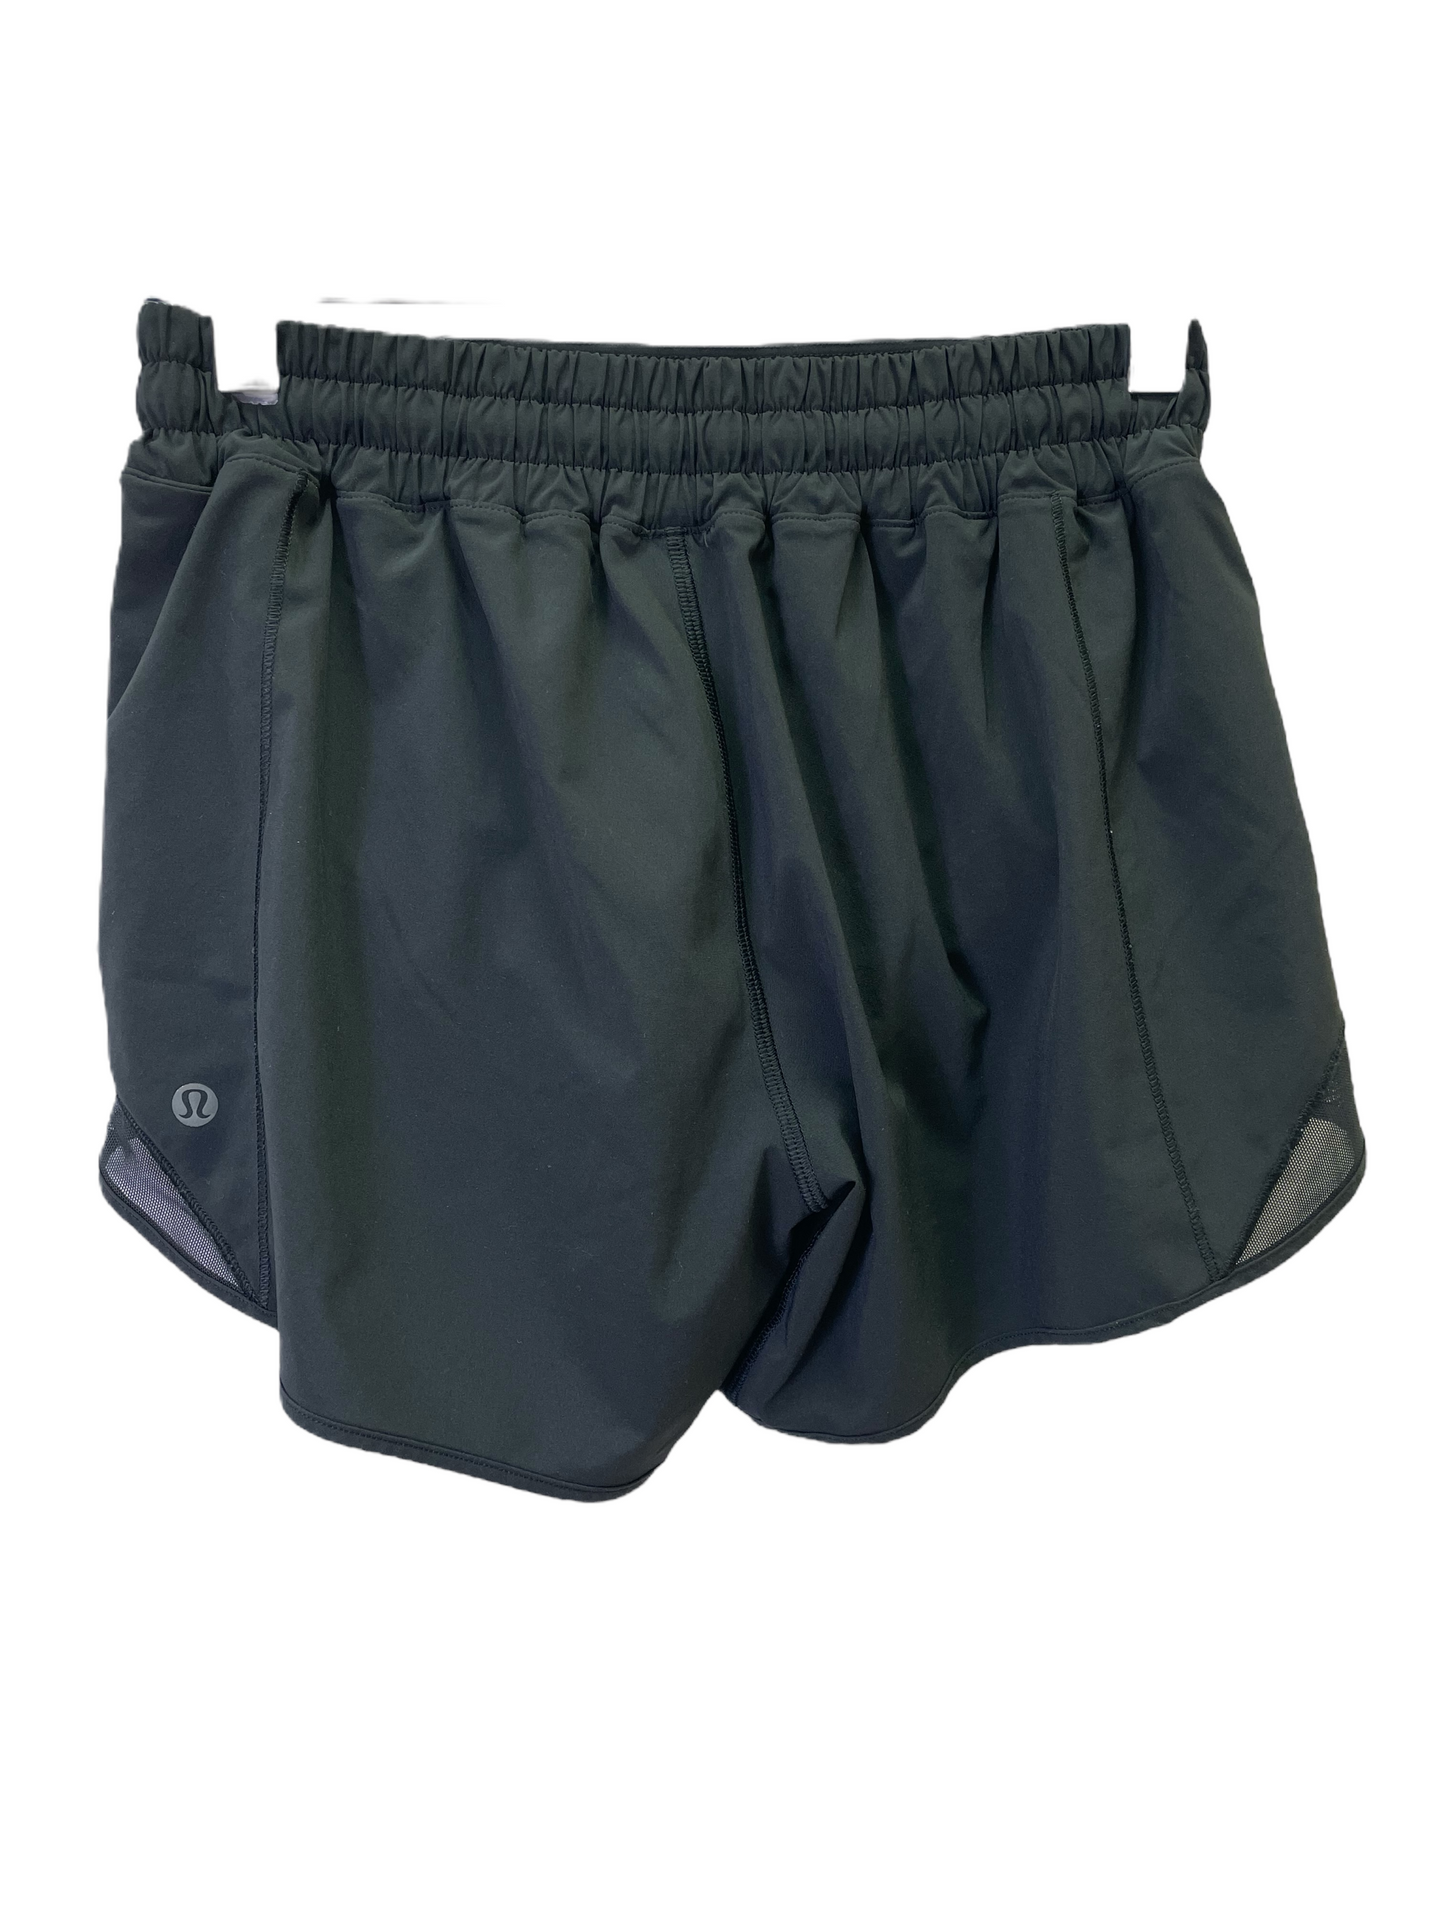 Black Athletic Shorts By Lululemon, Size: Xs